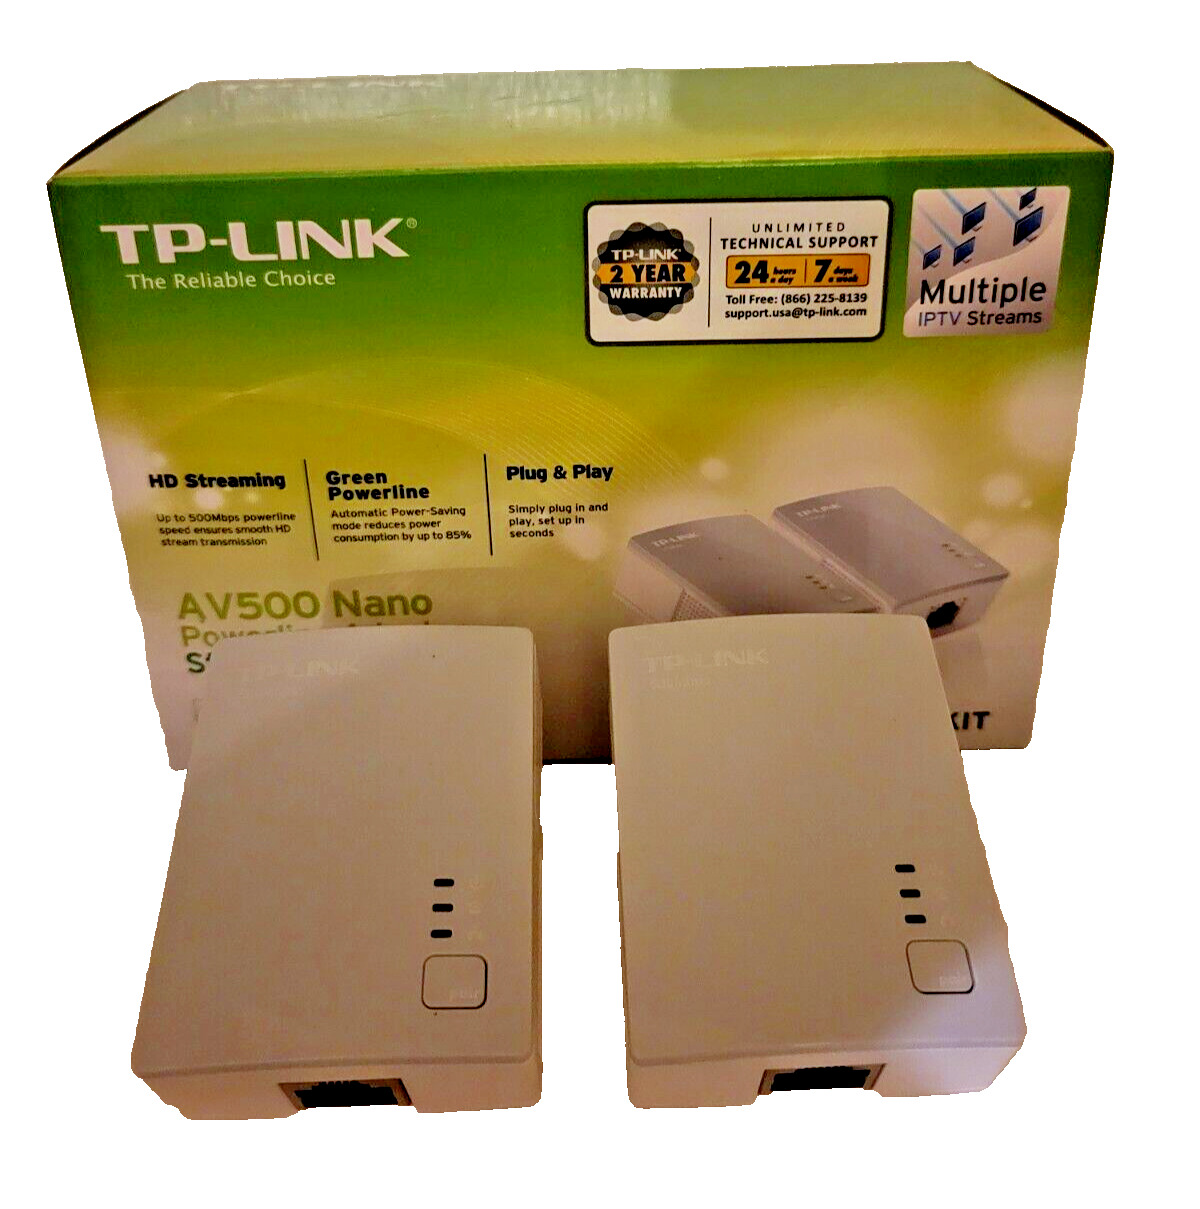 TP-LINK TL-PA4010KIT AV500 Nano Powerline Adapter Starter Kit - 2 pack * See dis